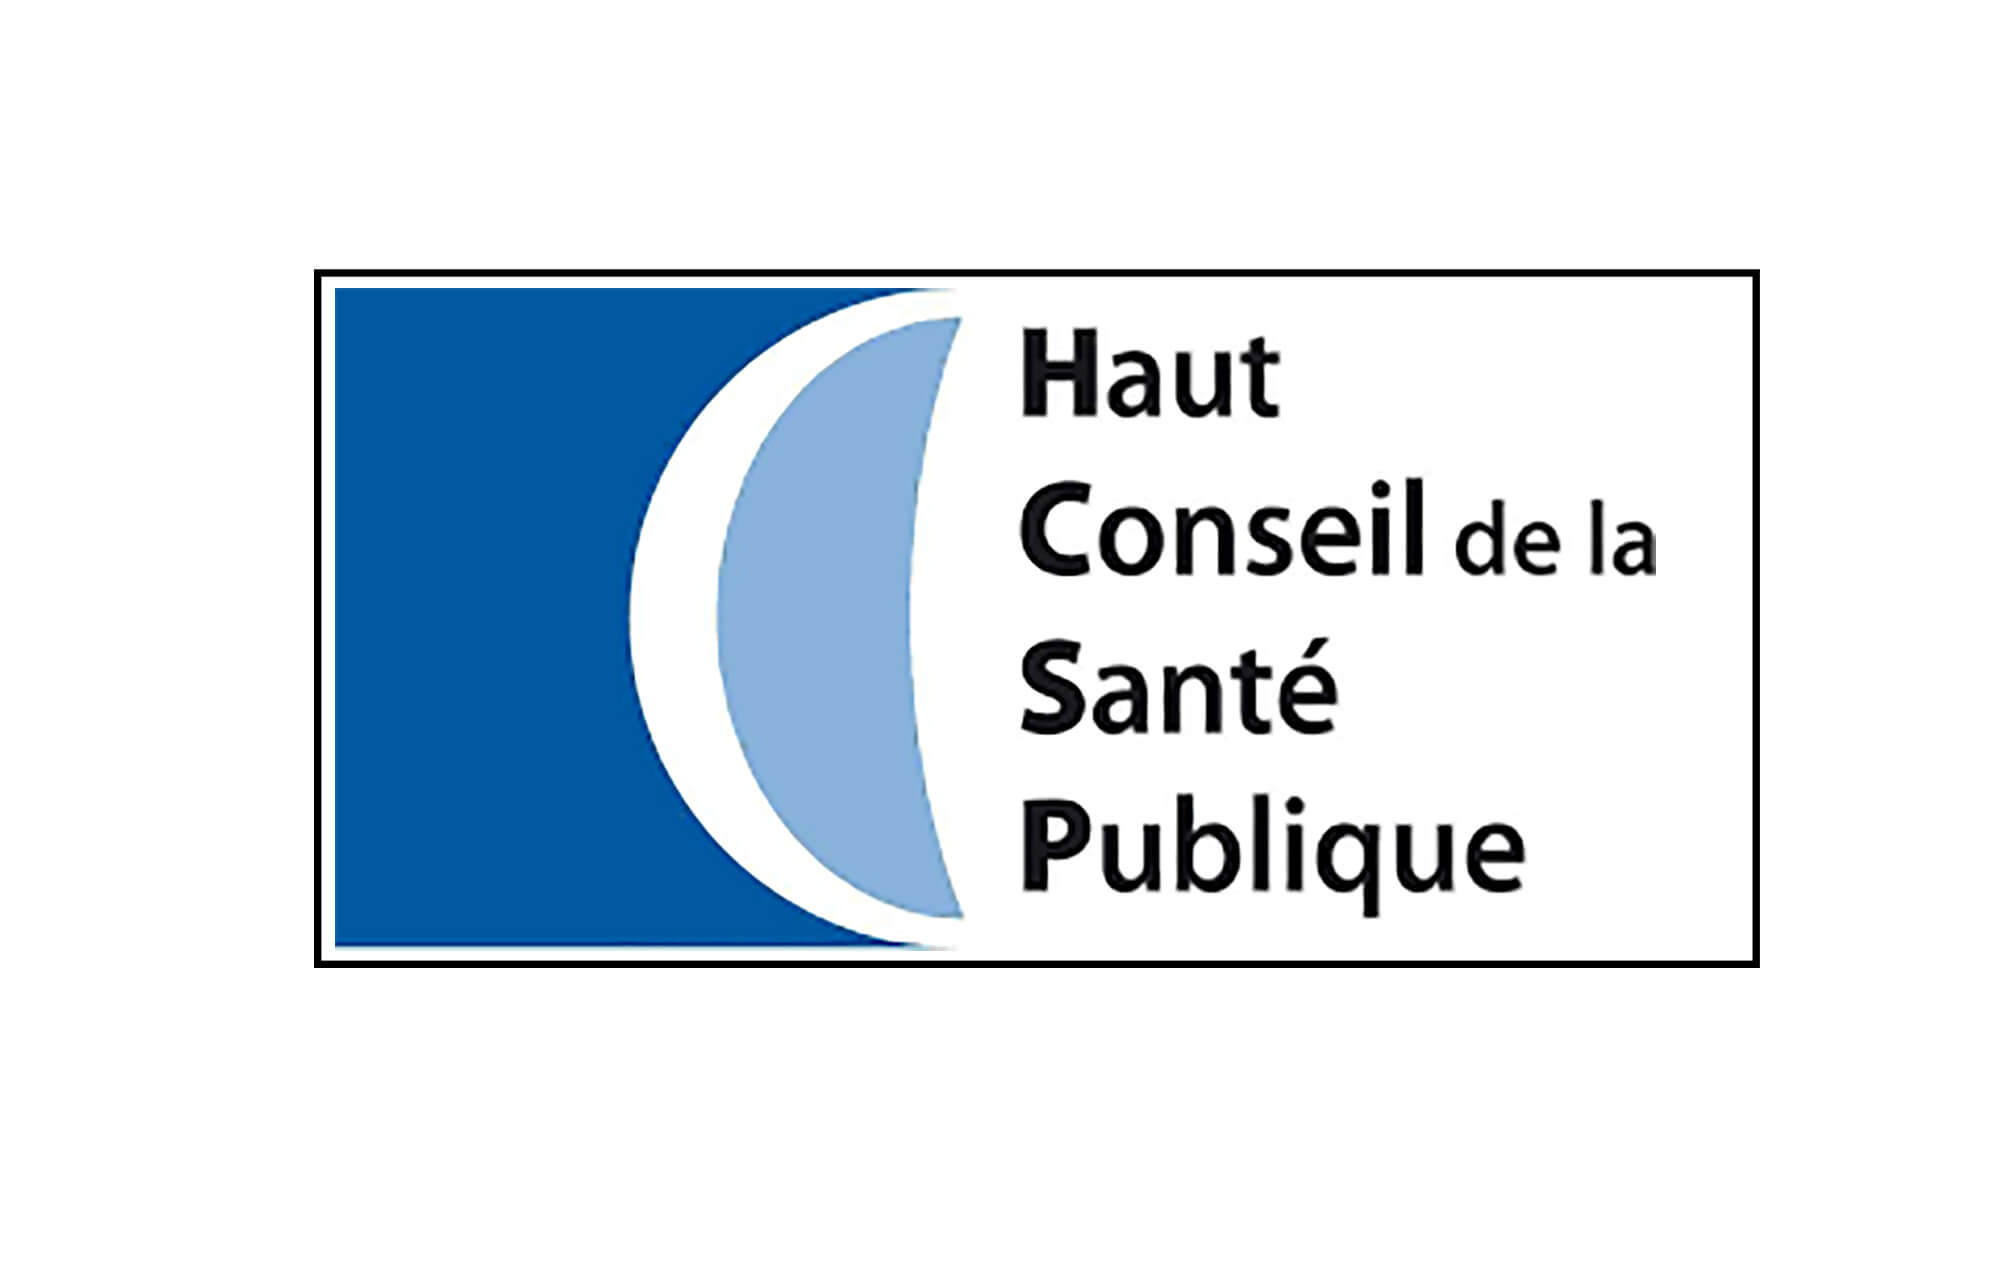 Haut Conseil de la santé publique (HCSP)